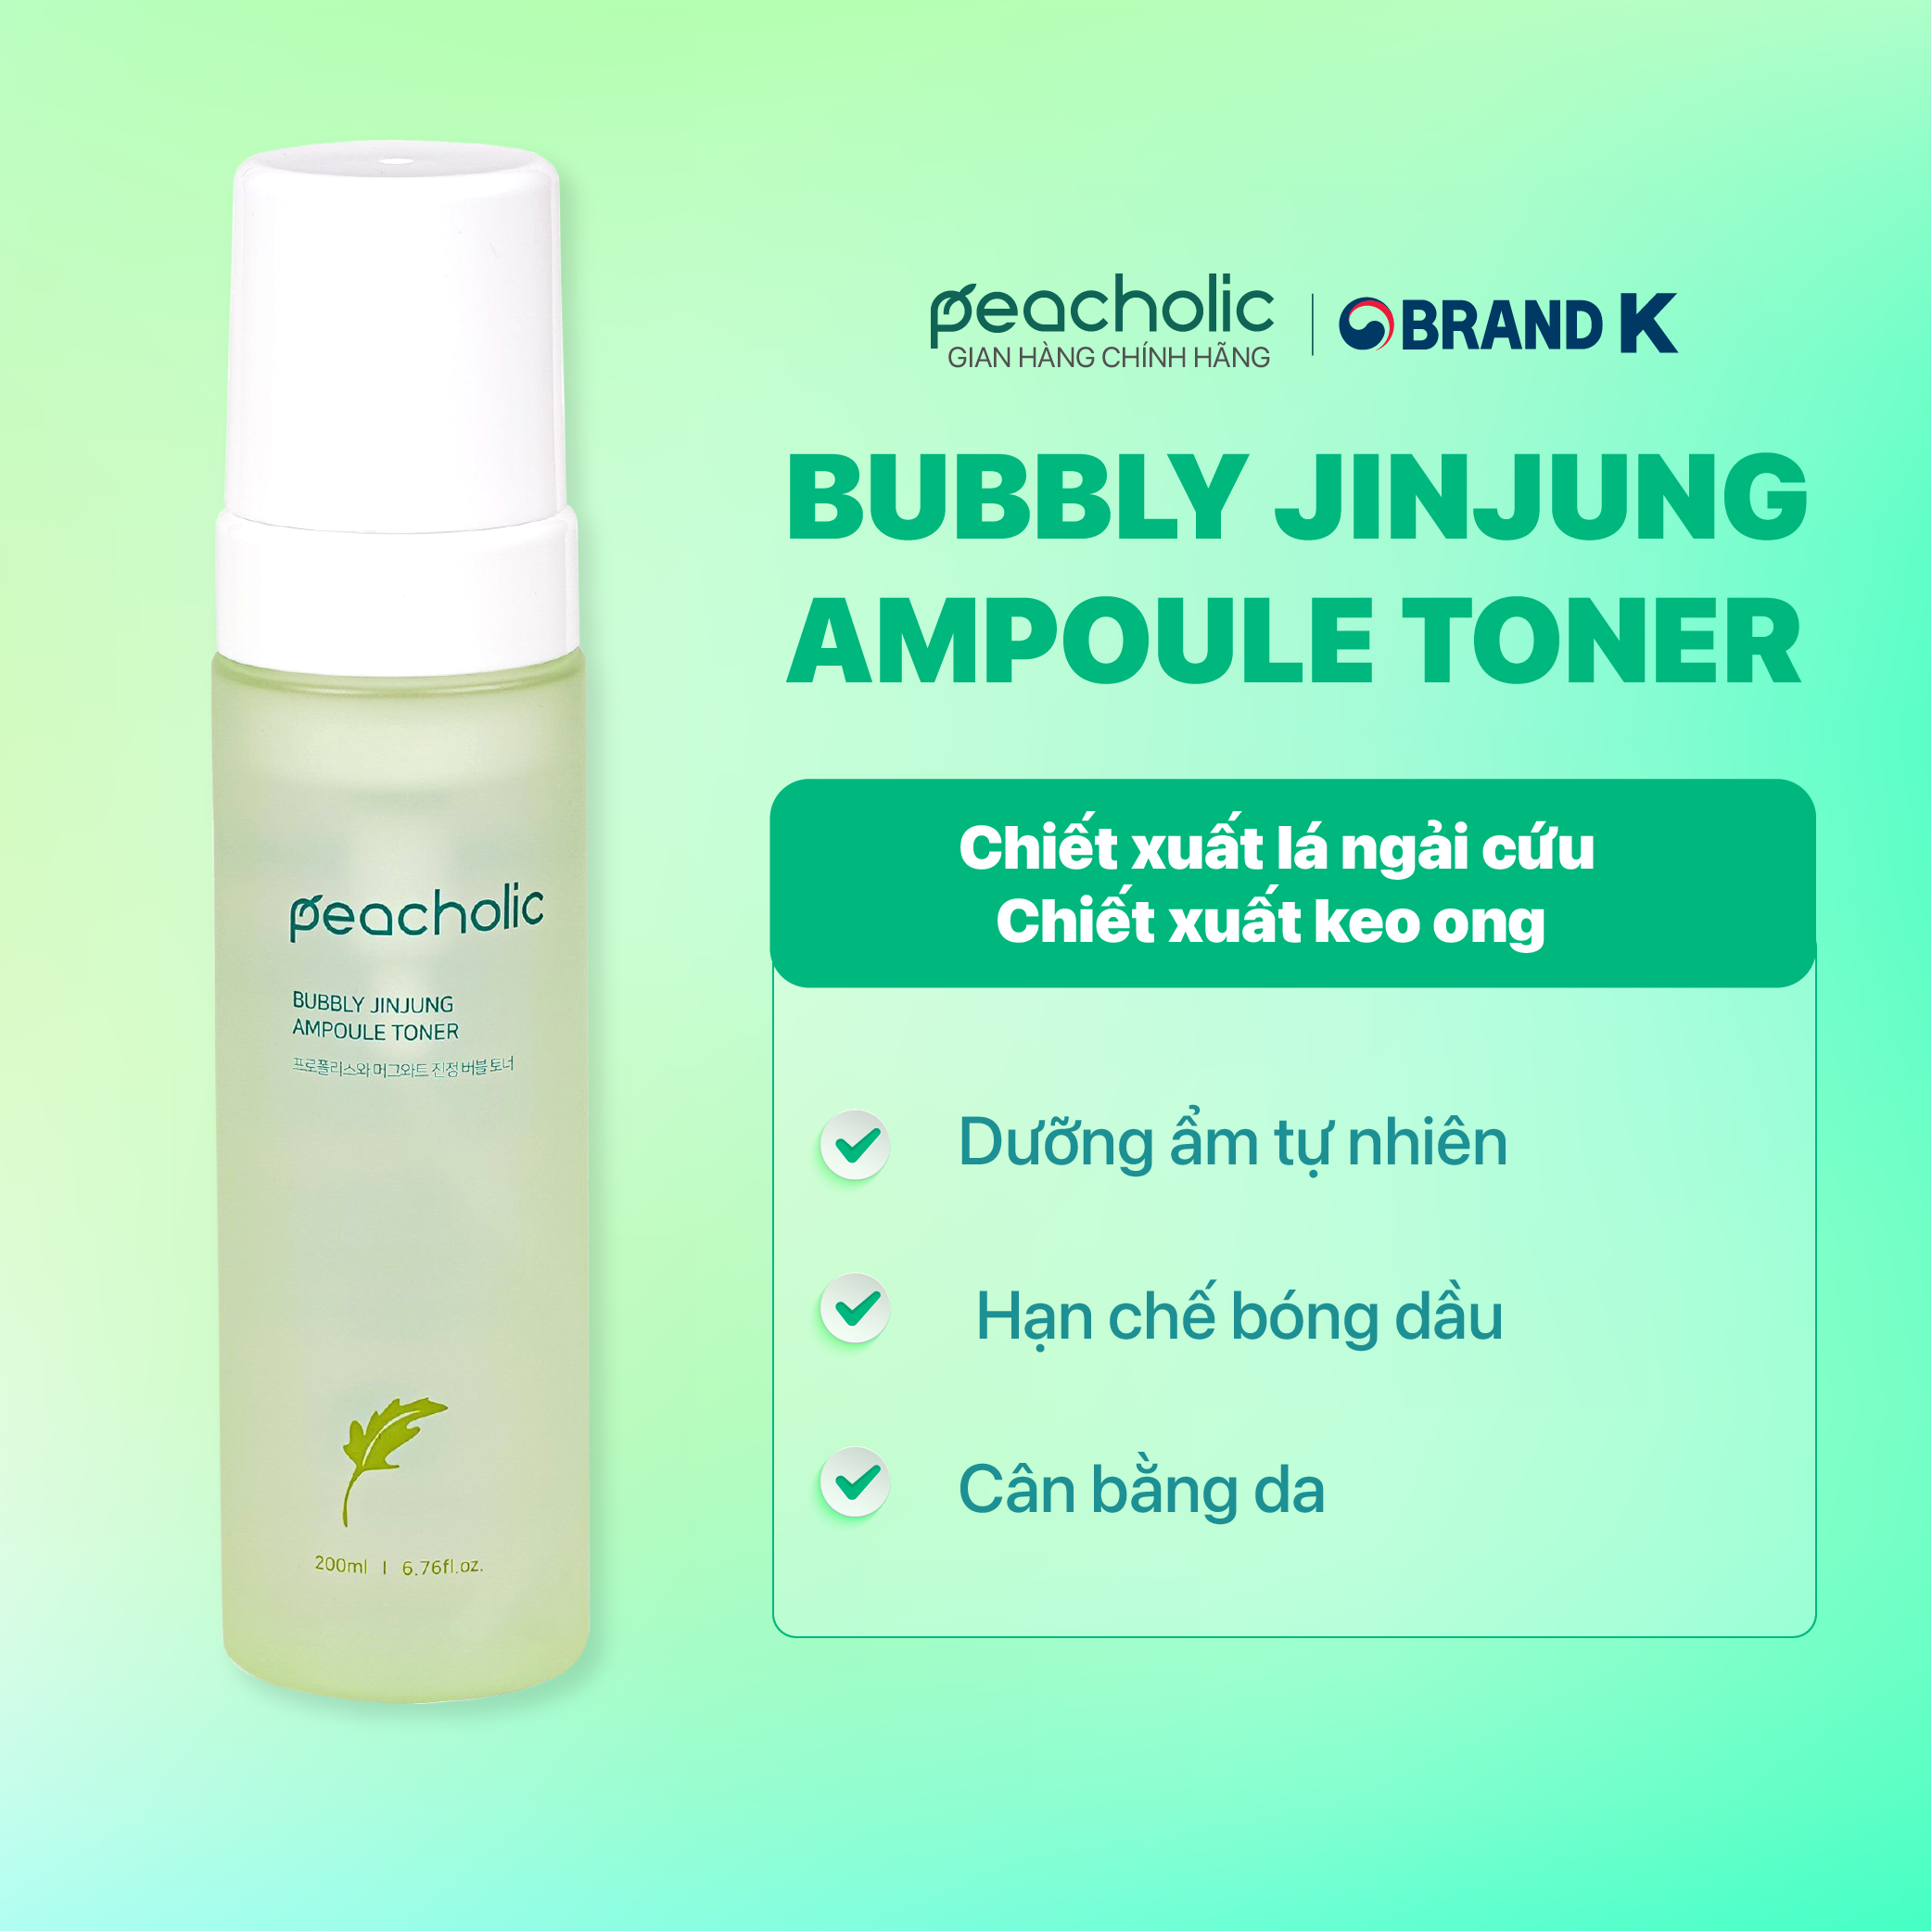 PEACHOLIC Nước cân bằng da chiết xuất keo ong và ngải cứu Bubbly Jinjung Ampoule Toner 200ml